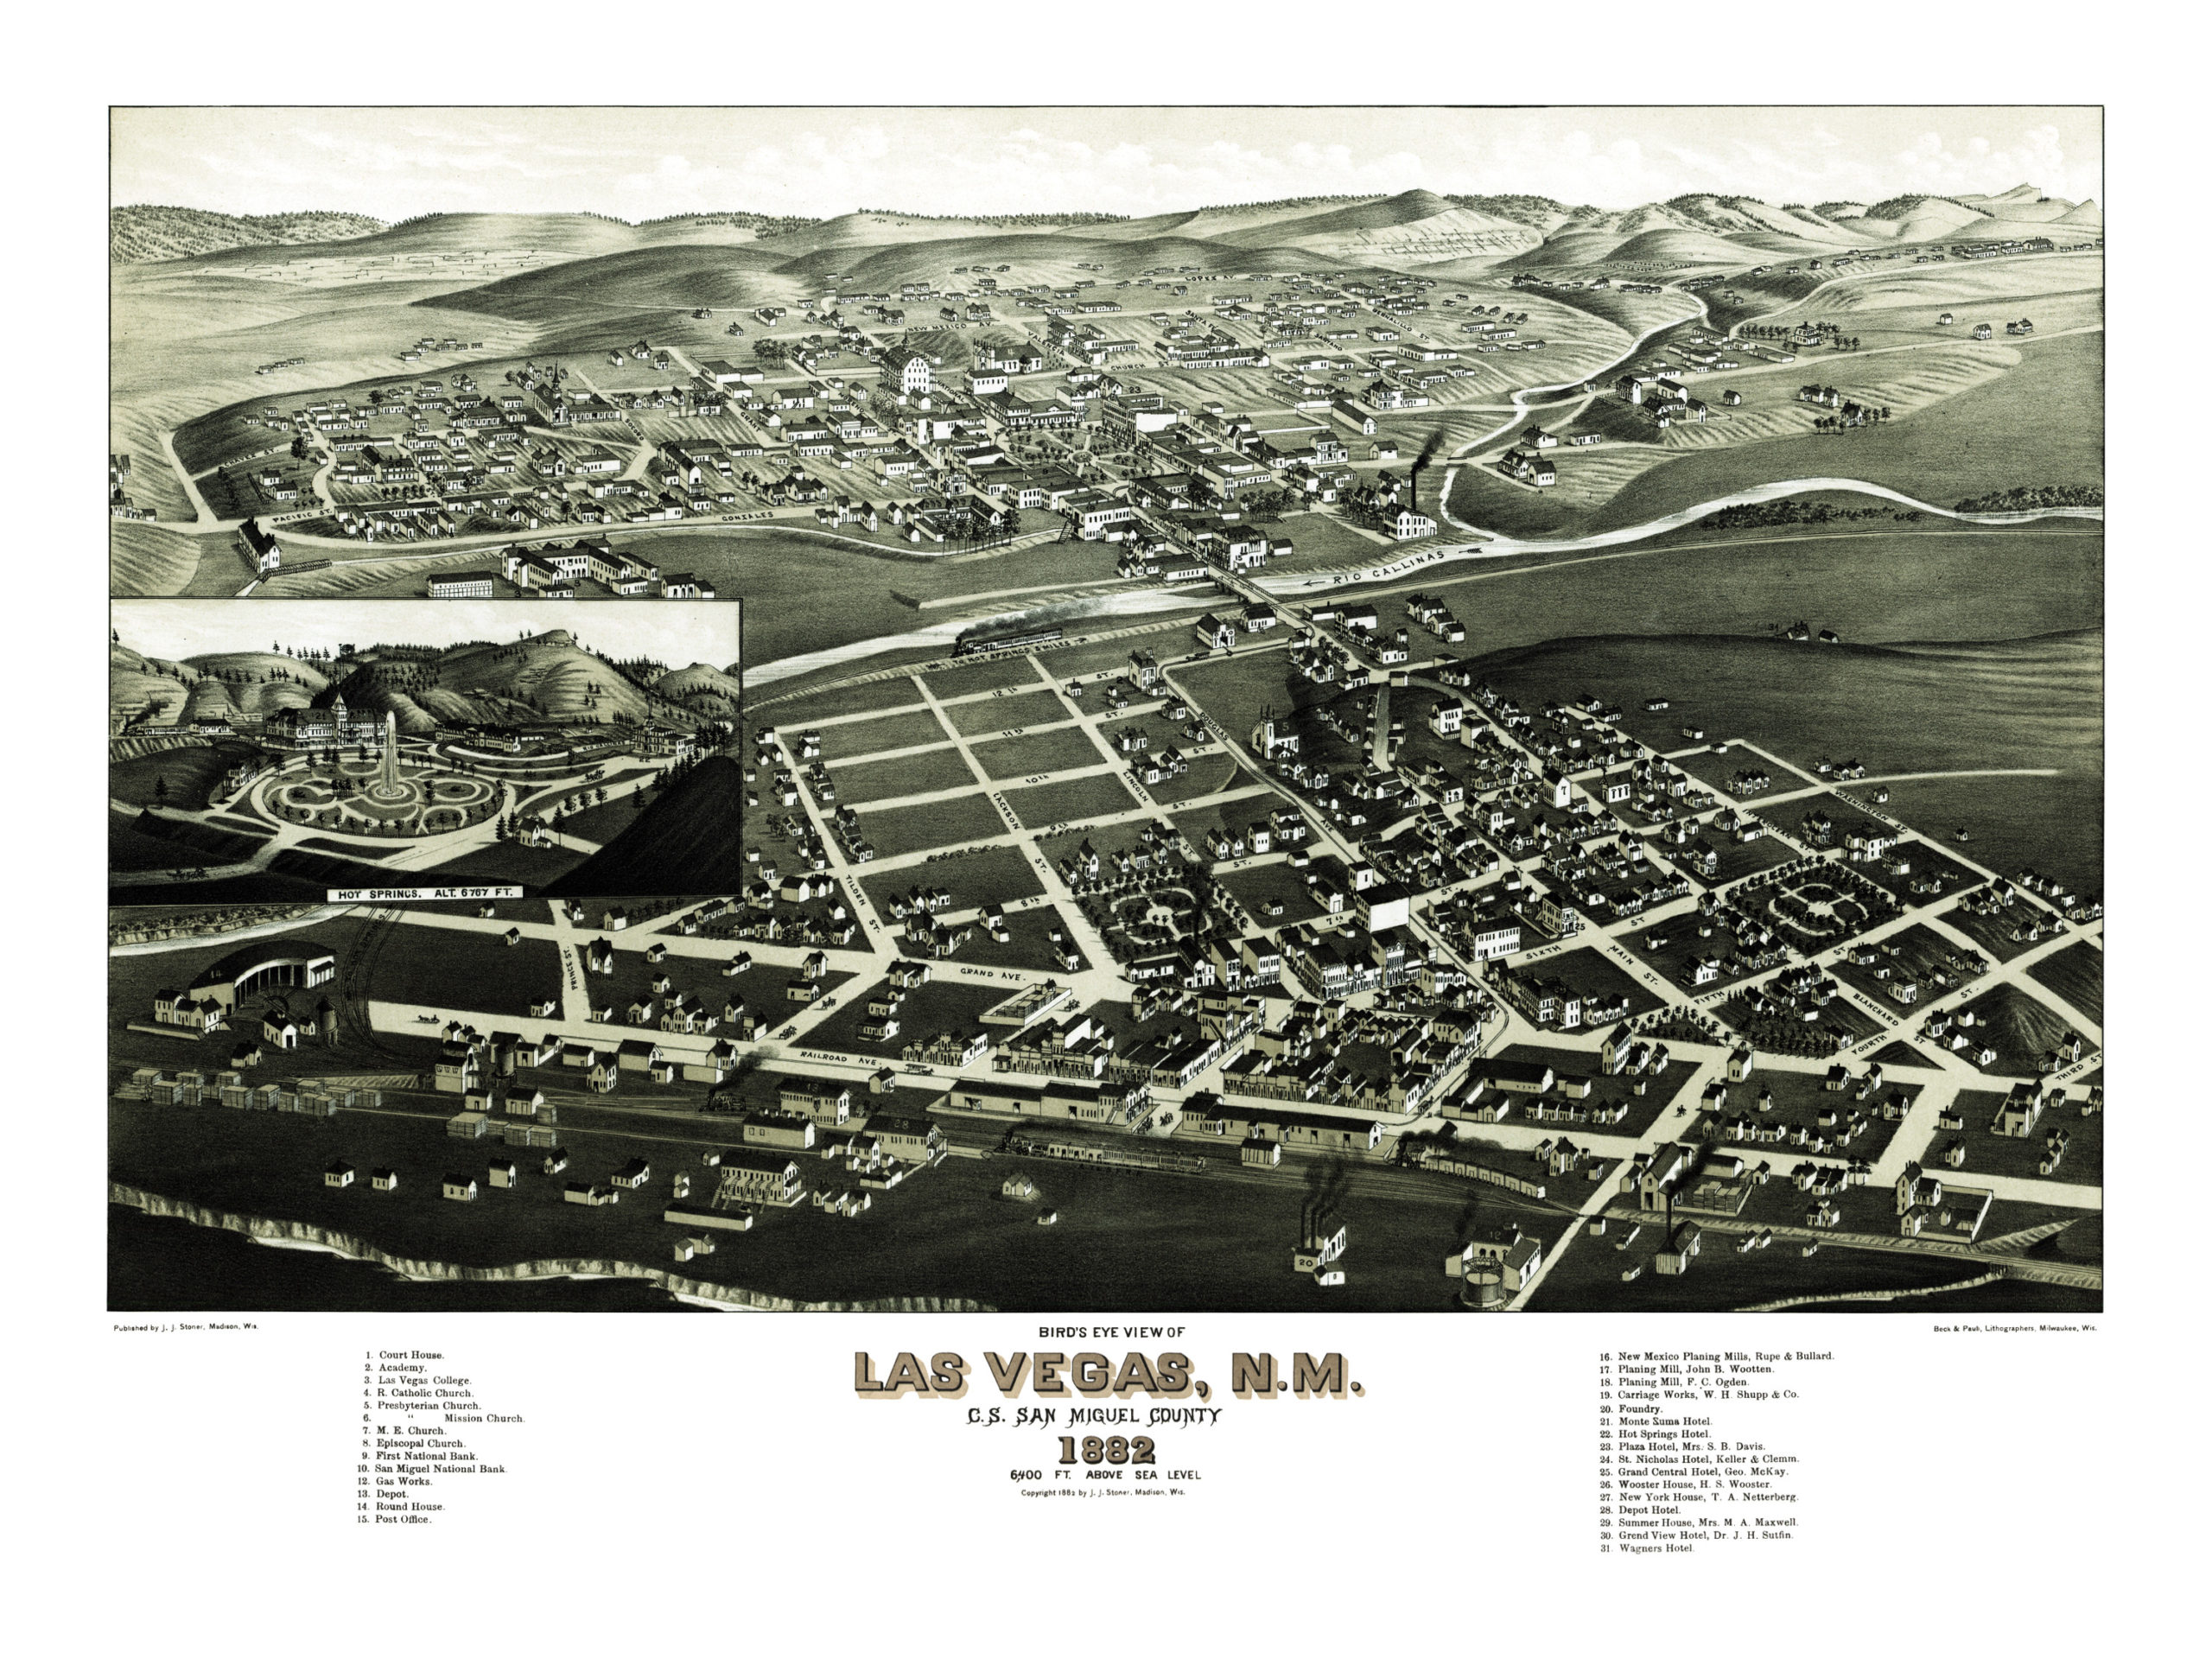 Las Vegas Optic (East Las Vegas, N.M.) 1908-1921